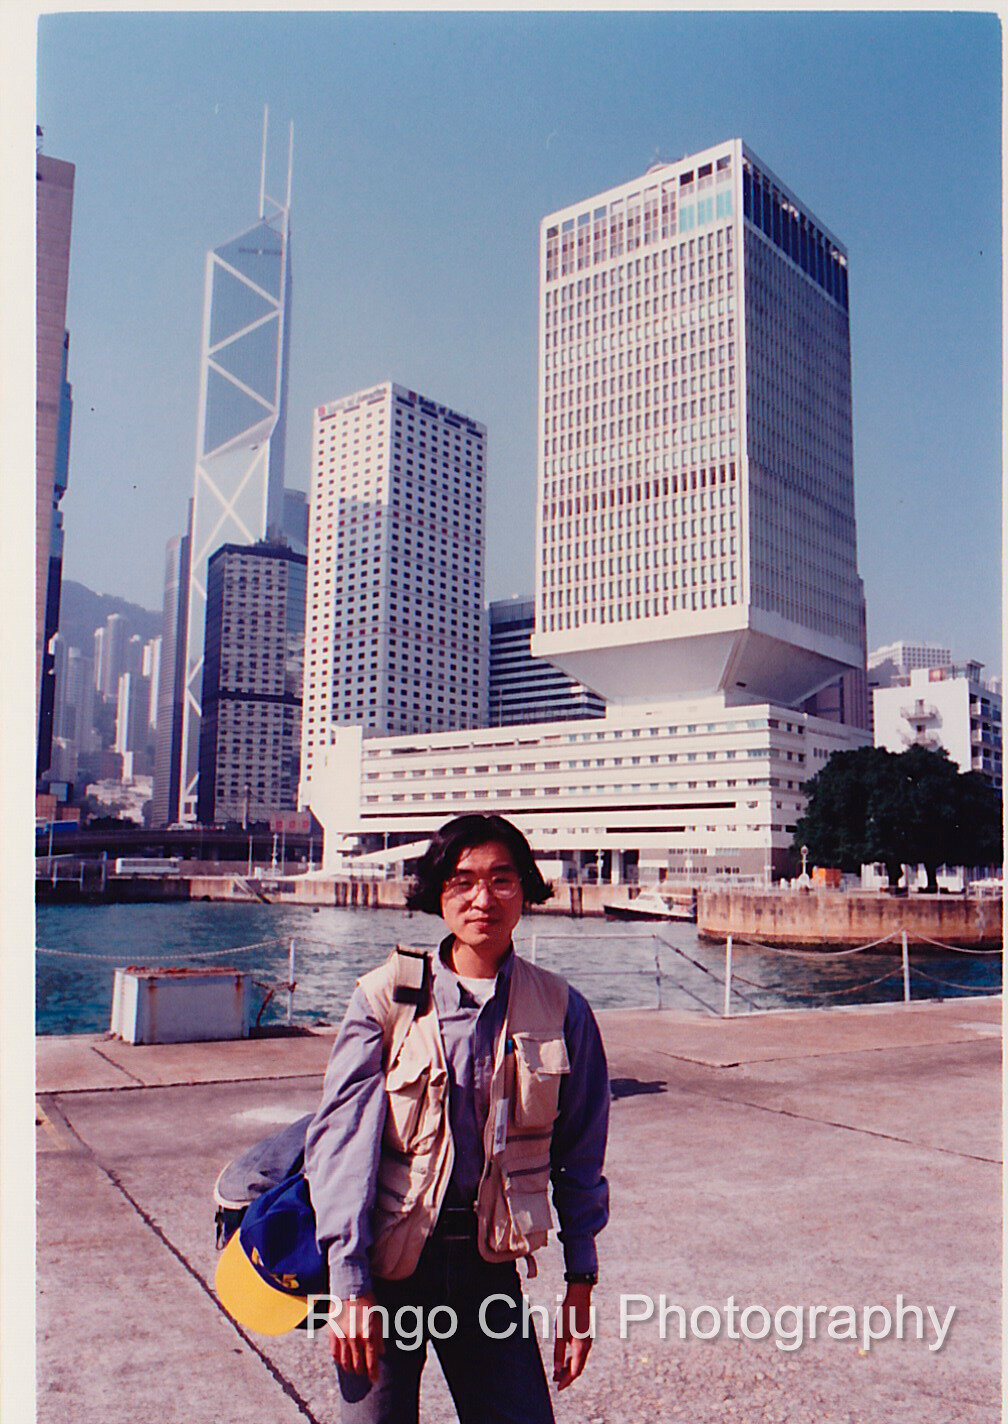  1993 in Hong Kong: Ringo with long hairs stands at HMS Tamar naval base in Central, Hong Kong. 